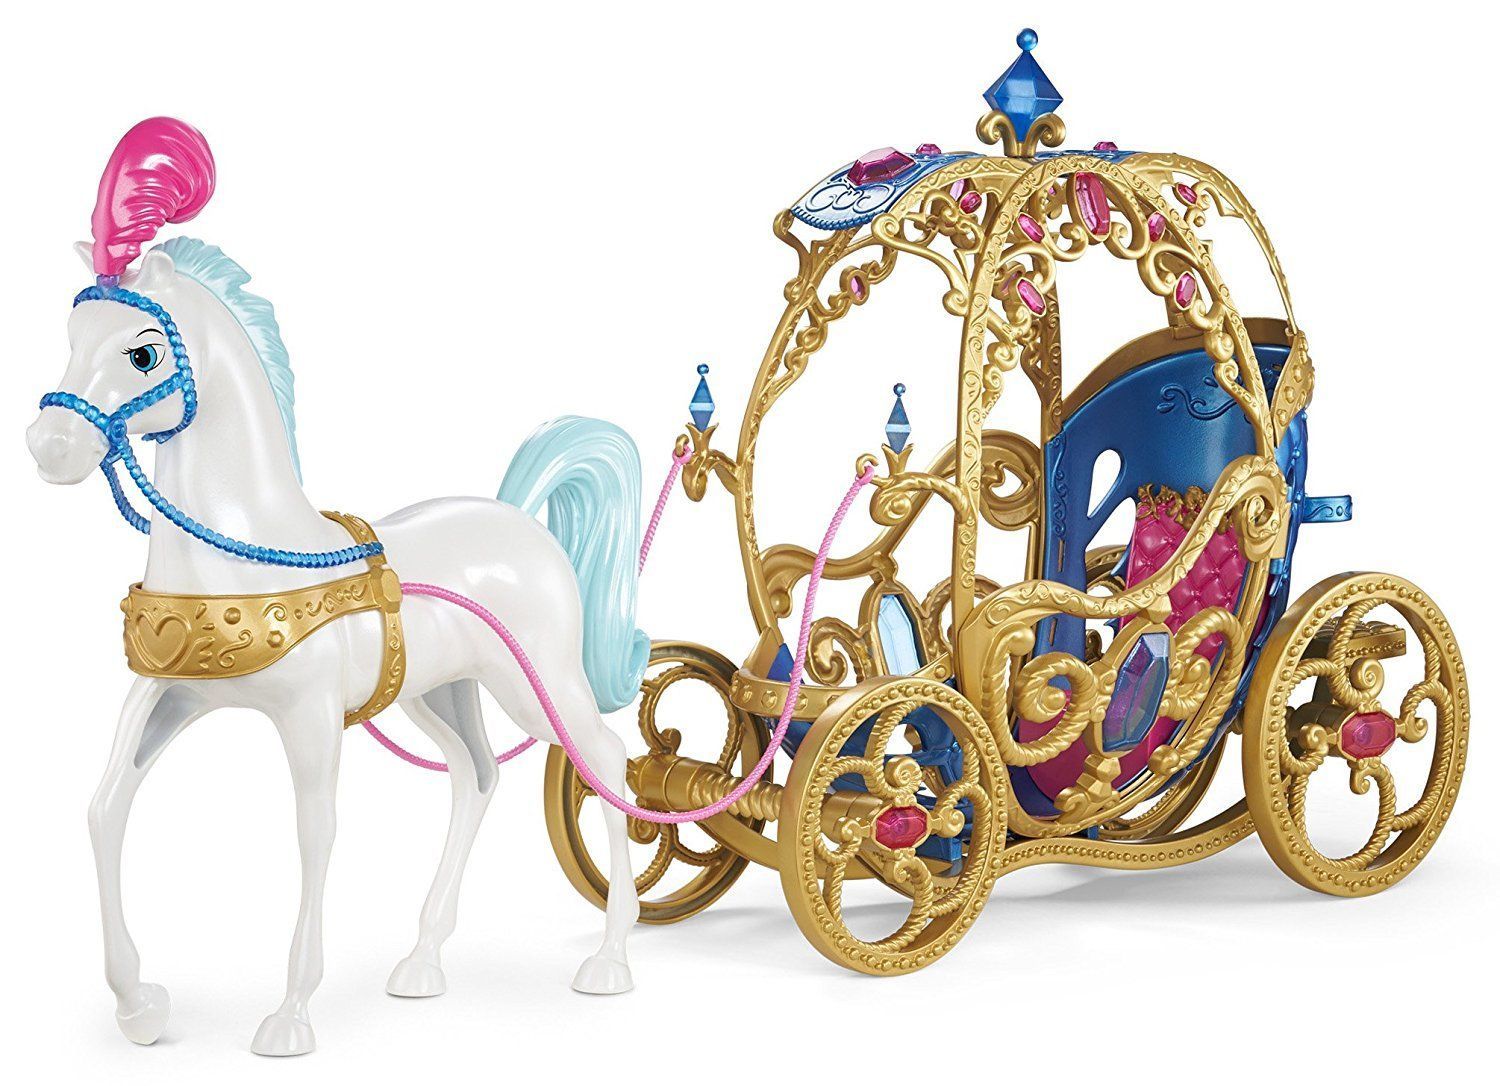 Лошадки принцессы. Hasbro Disney Princess лошадь с каретой для Золушки. Золушка игрушка Дисней с каретой. Hasbro Disney Princess трансформирующаяся карета Золушки. QF-071a2 карета с принцессой.